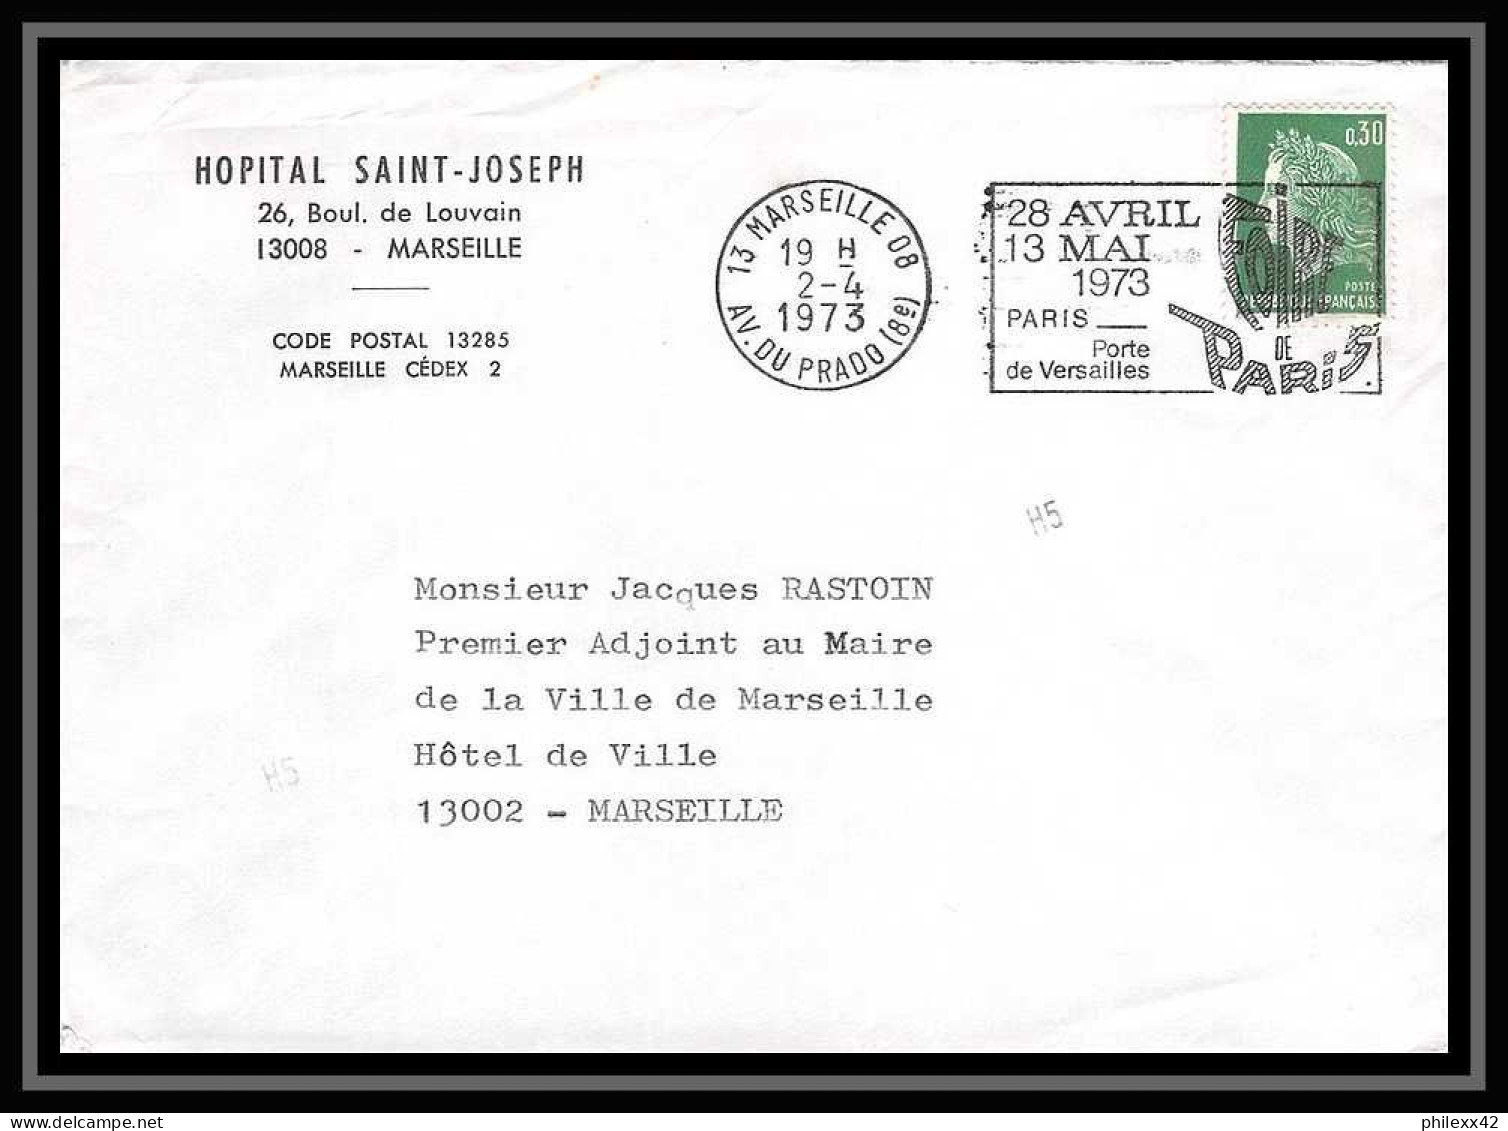 116556 lot de 13 Lettres dont recommandé cover Bouches du rhone Marseille Prado